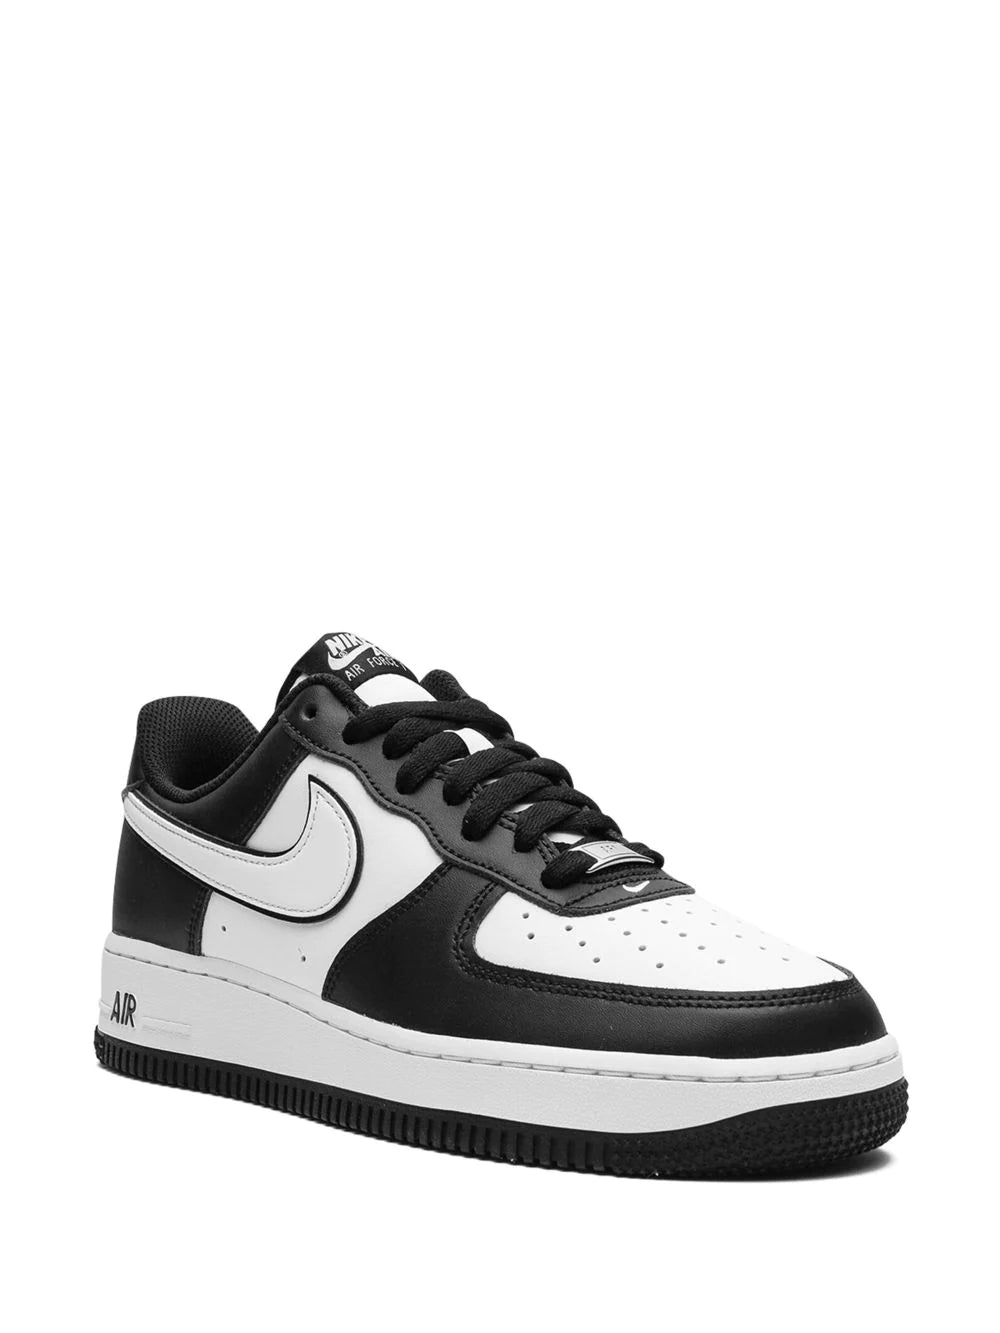 Nike  Air Force 1 Low "Panda" sneakers